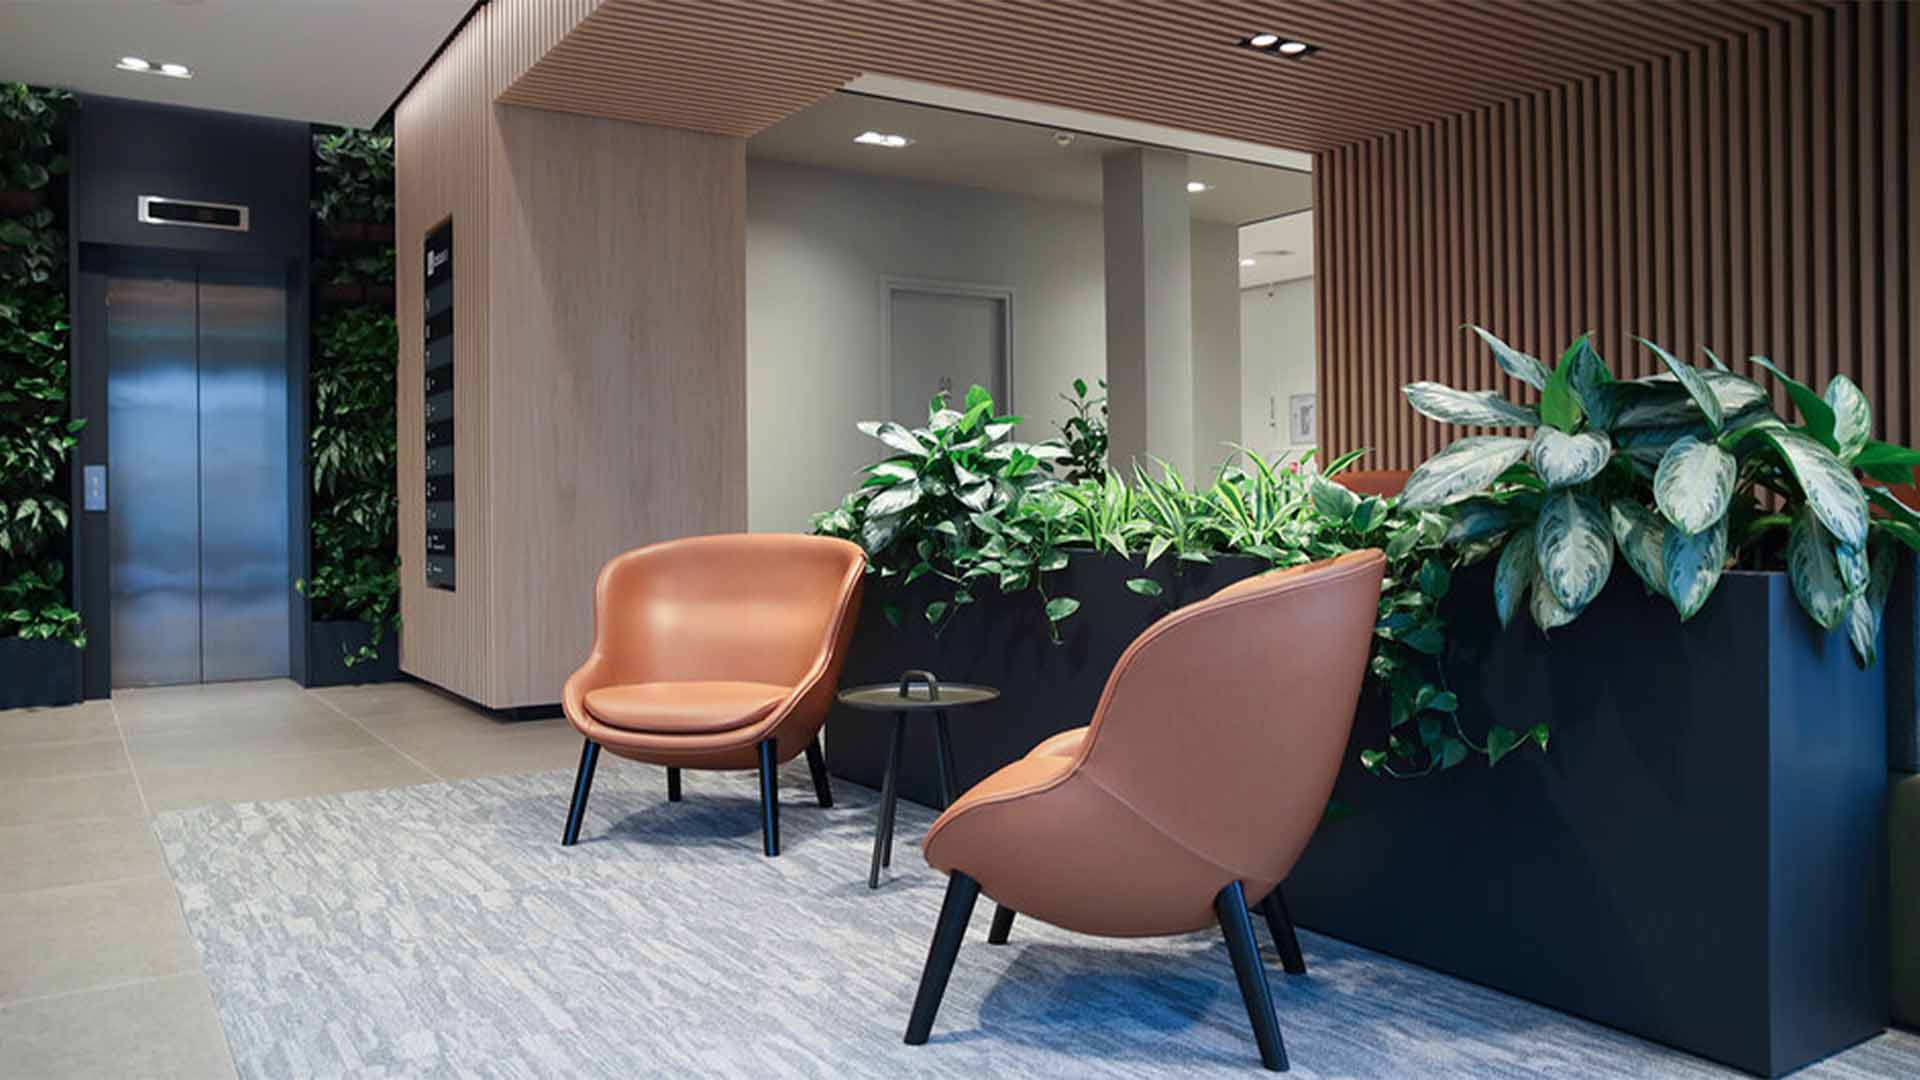 Maaskant - LotusB - werken - kantoorgebouw - meubilair - hal - stoelen - zitplekken